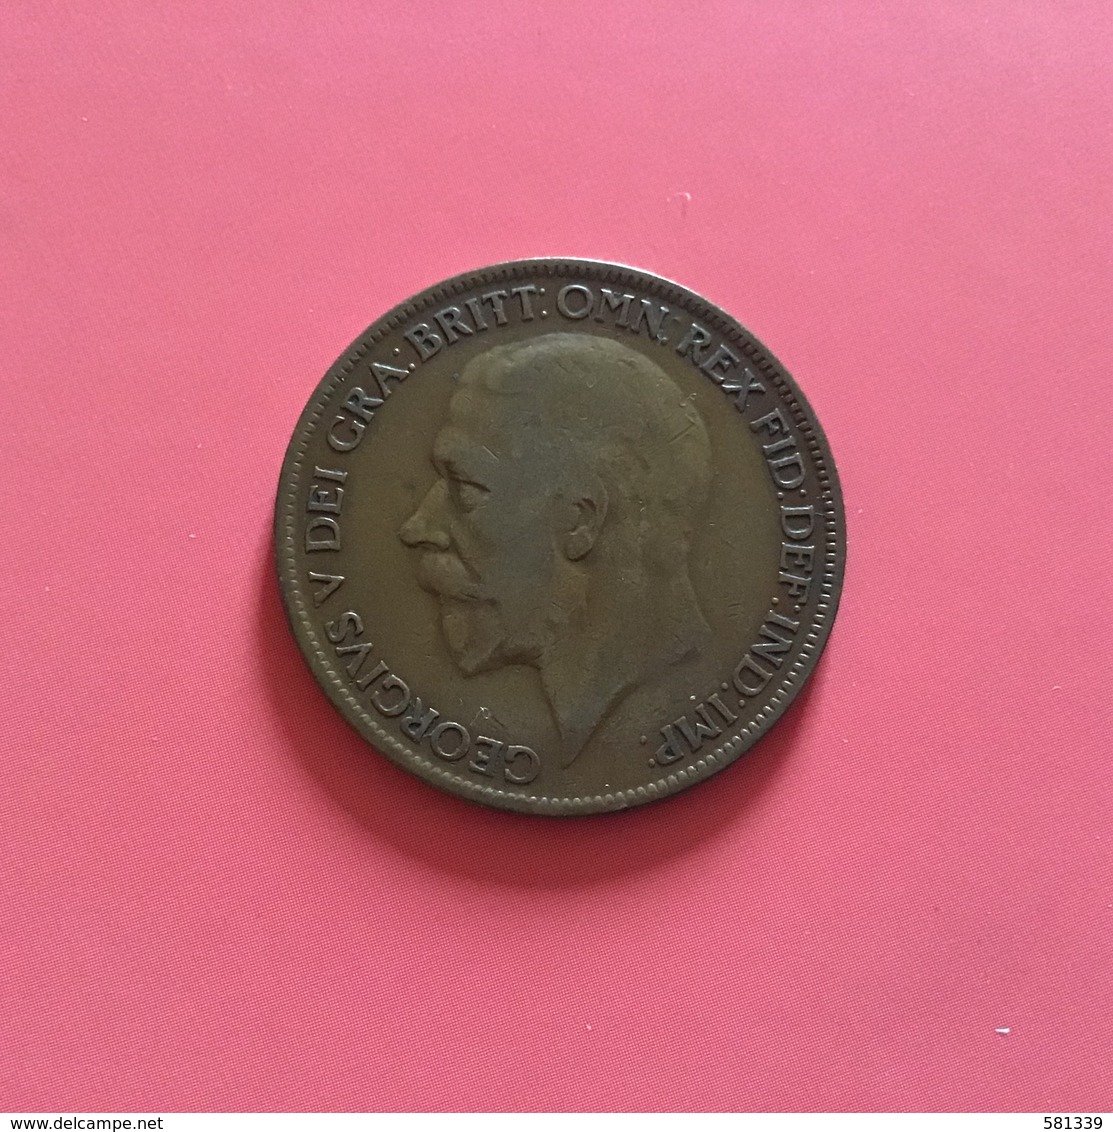 GRAN BRETAGNA  - ENGLAND  1927  Moneta 1 PENNY Giorgio V - G. 4 Pence